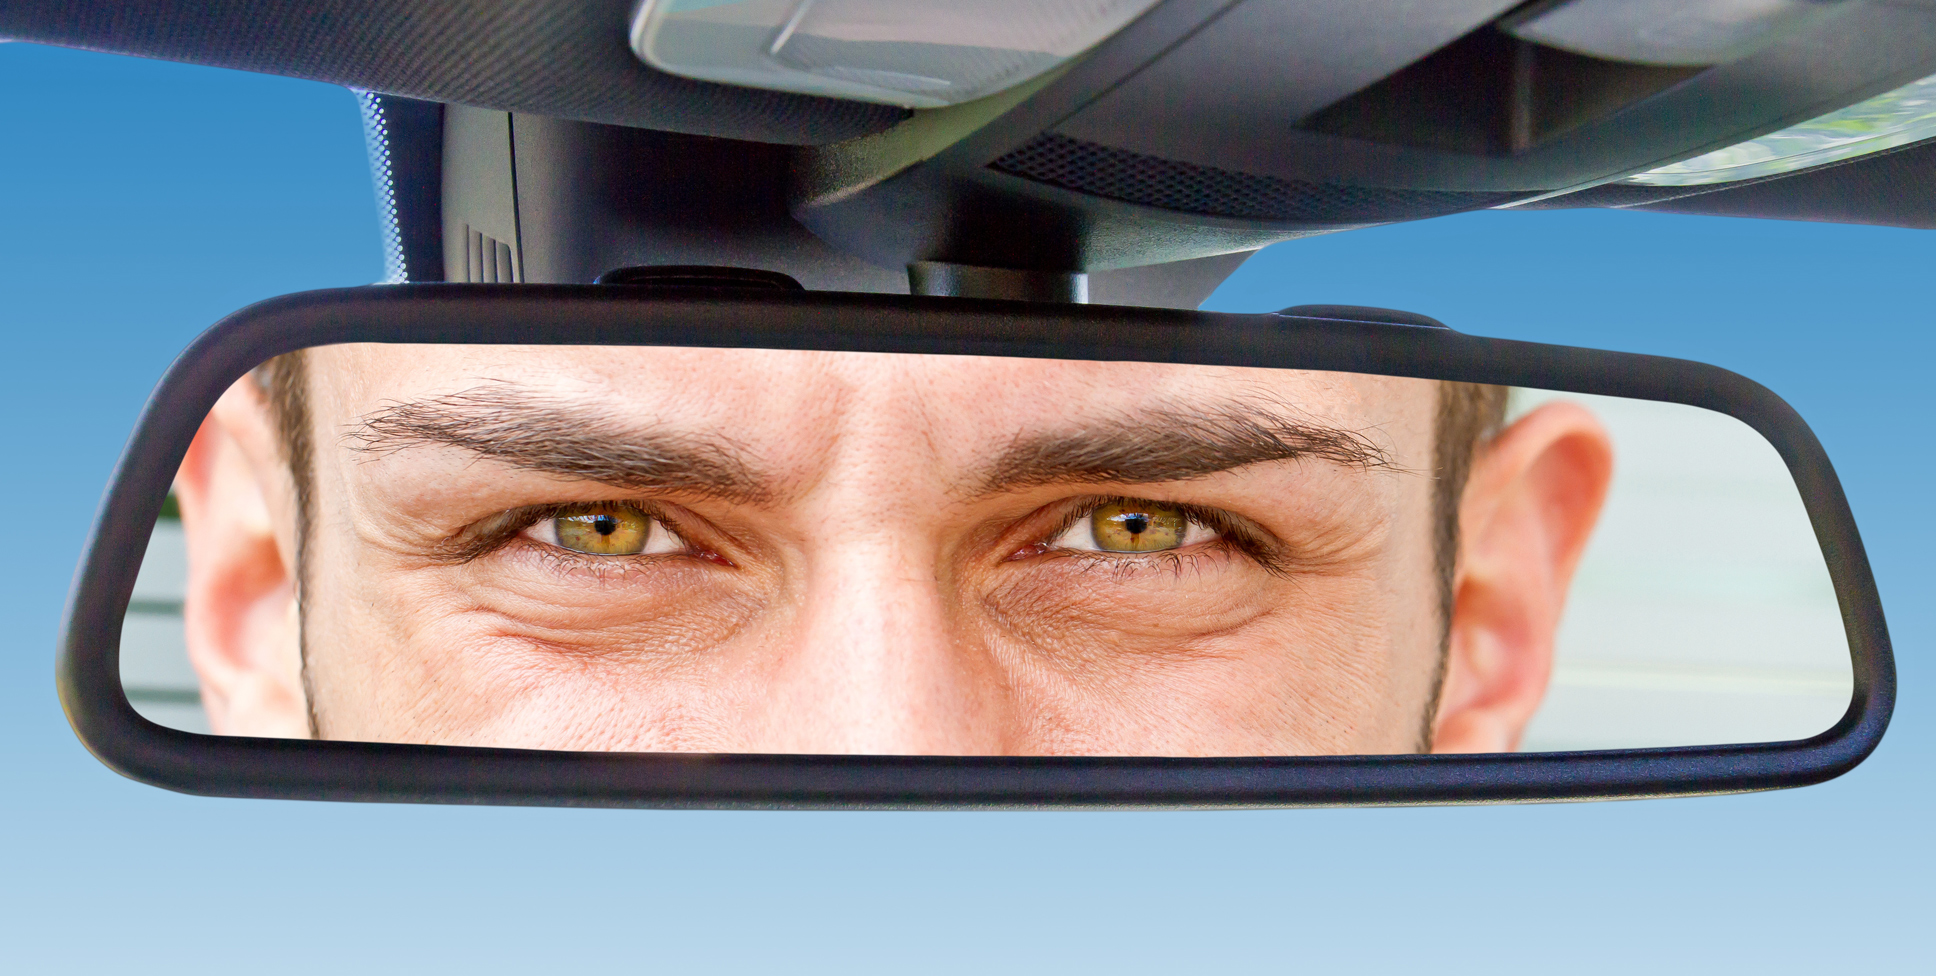 Водитель смотрит в зеркало. Глаза в зеркале автомобиля. Глаза в автомобильном зеркале.